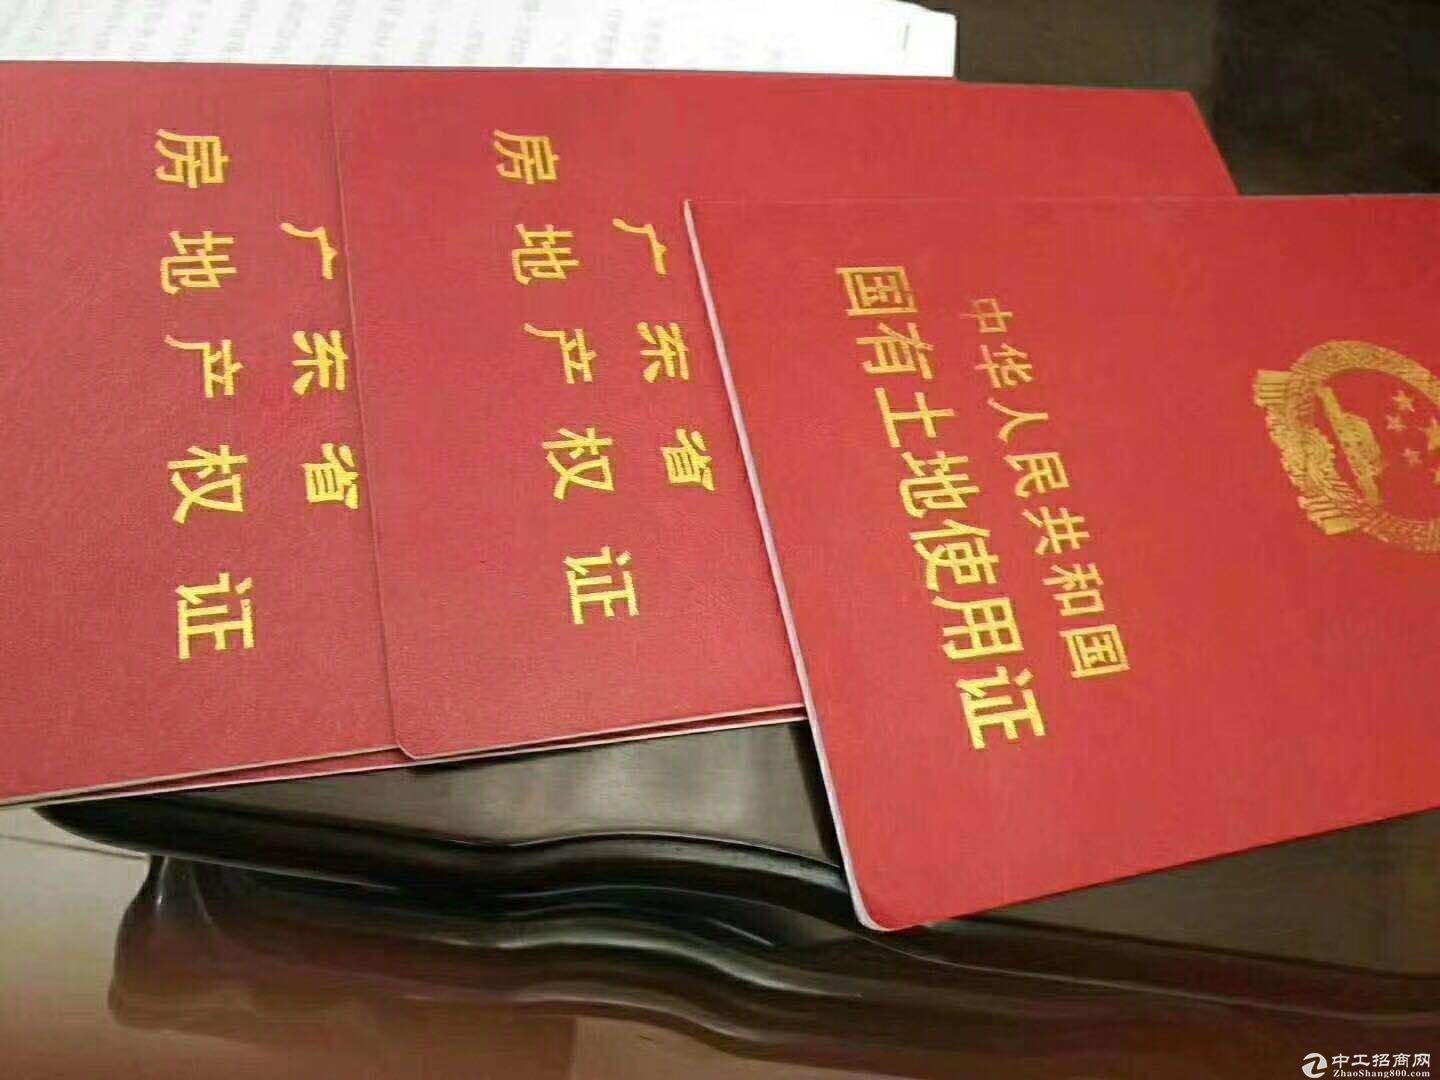 深圳 东莞 惠州 土地 厂房 招商 大小可分割产权清晰证件齐全2